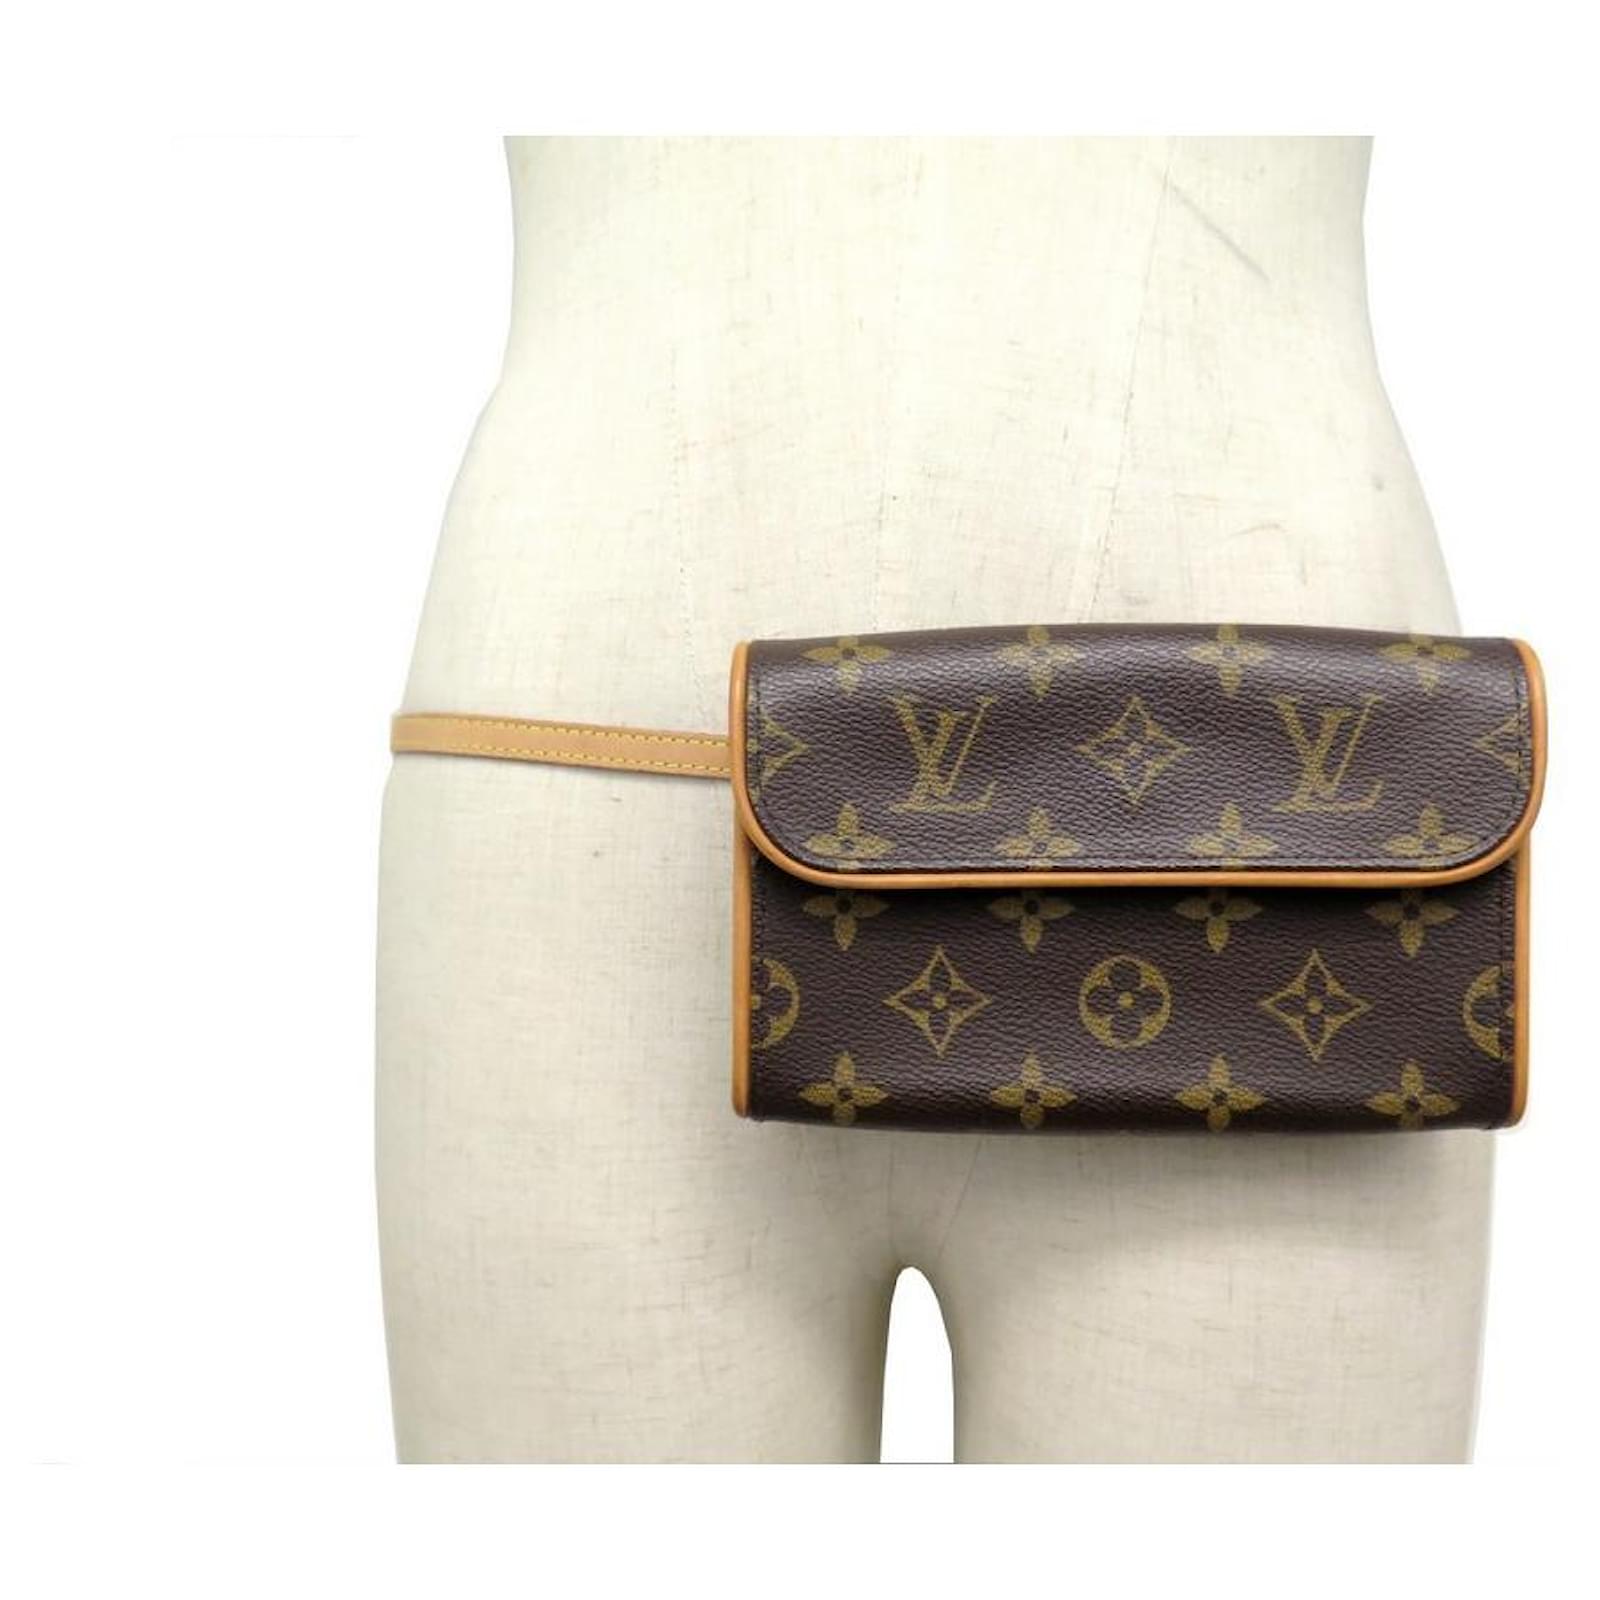 Clutch Bags Louis Vuitton New Louis Vuitton Florentine M POUCH51855 Monogram Pouch Canvas Belt Bag